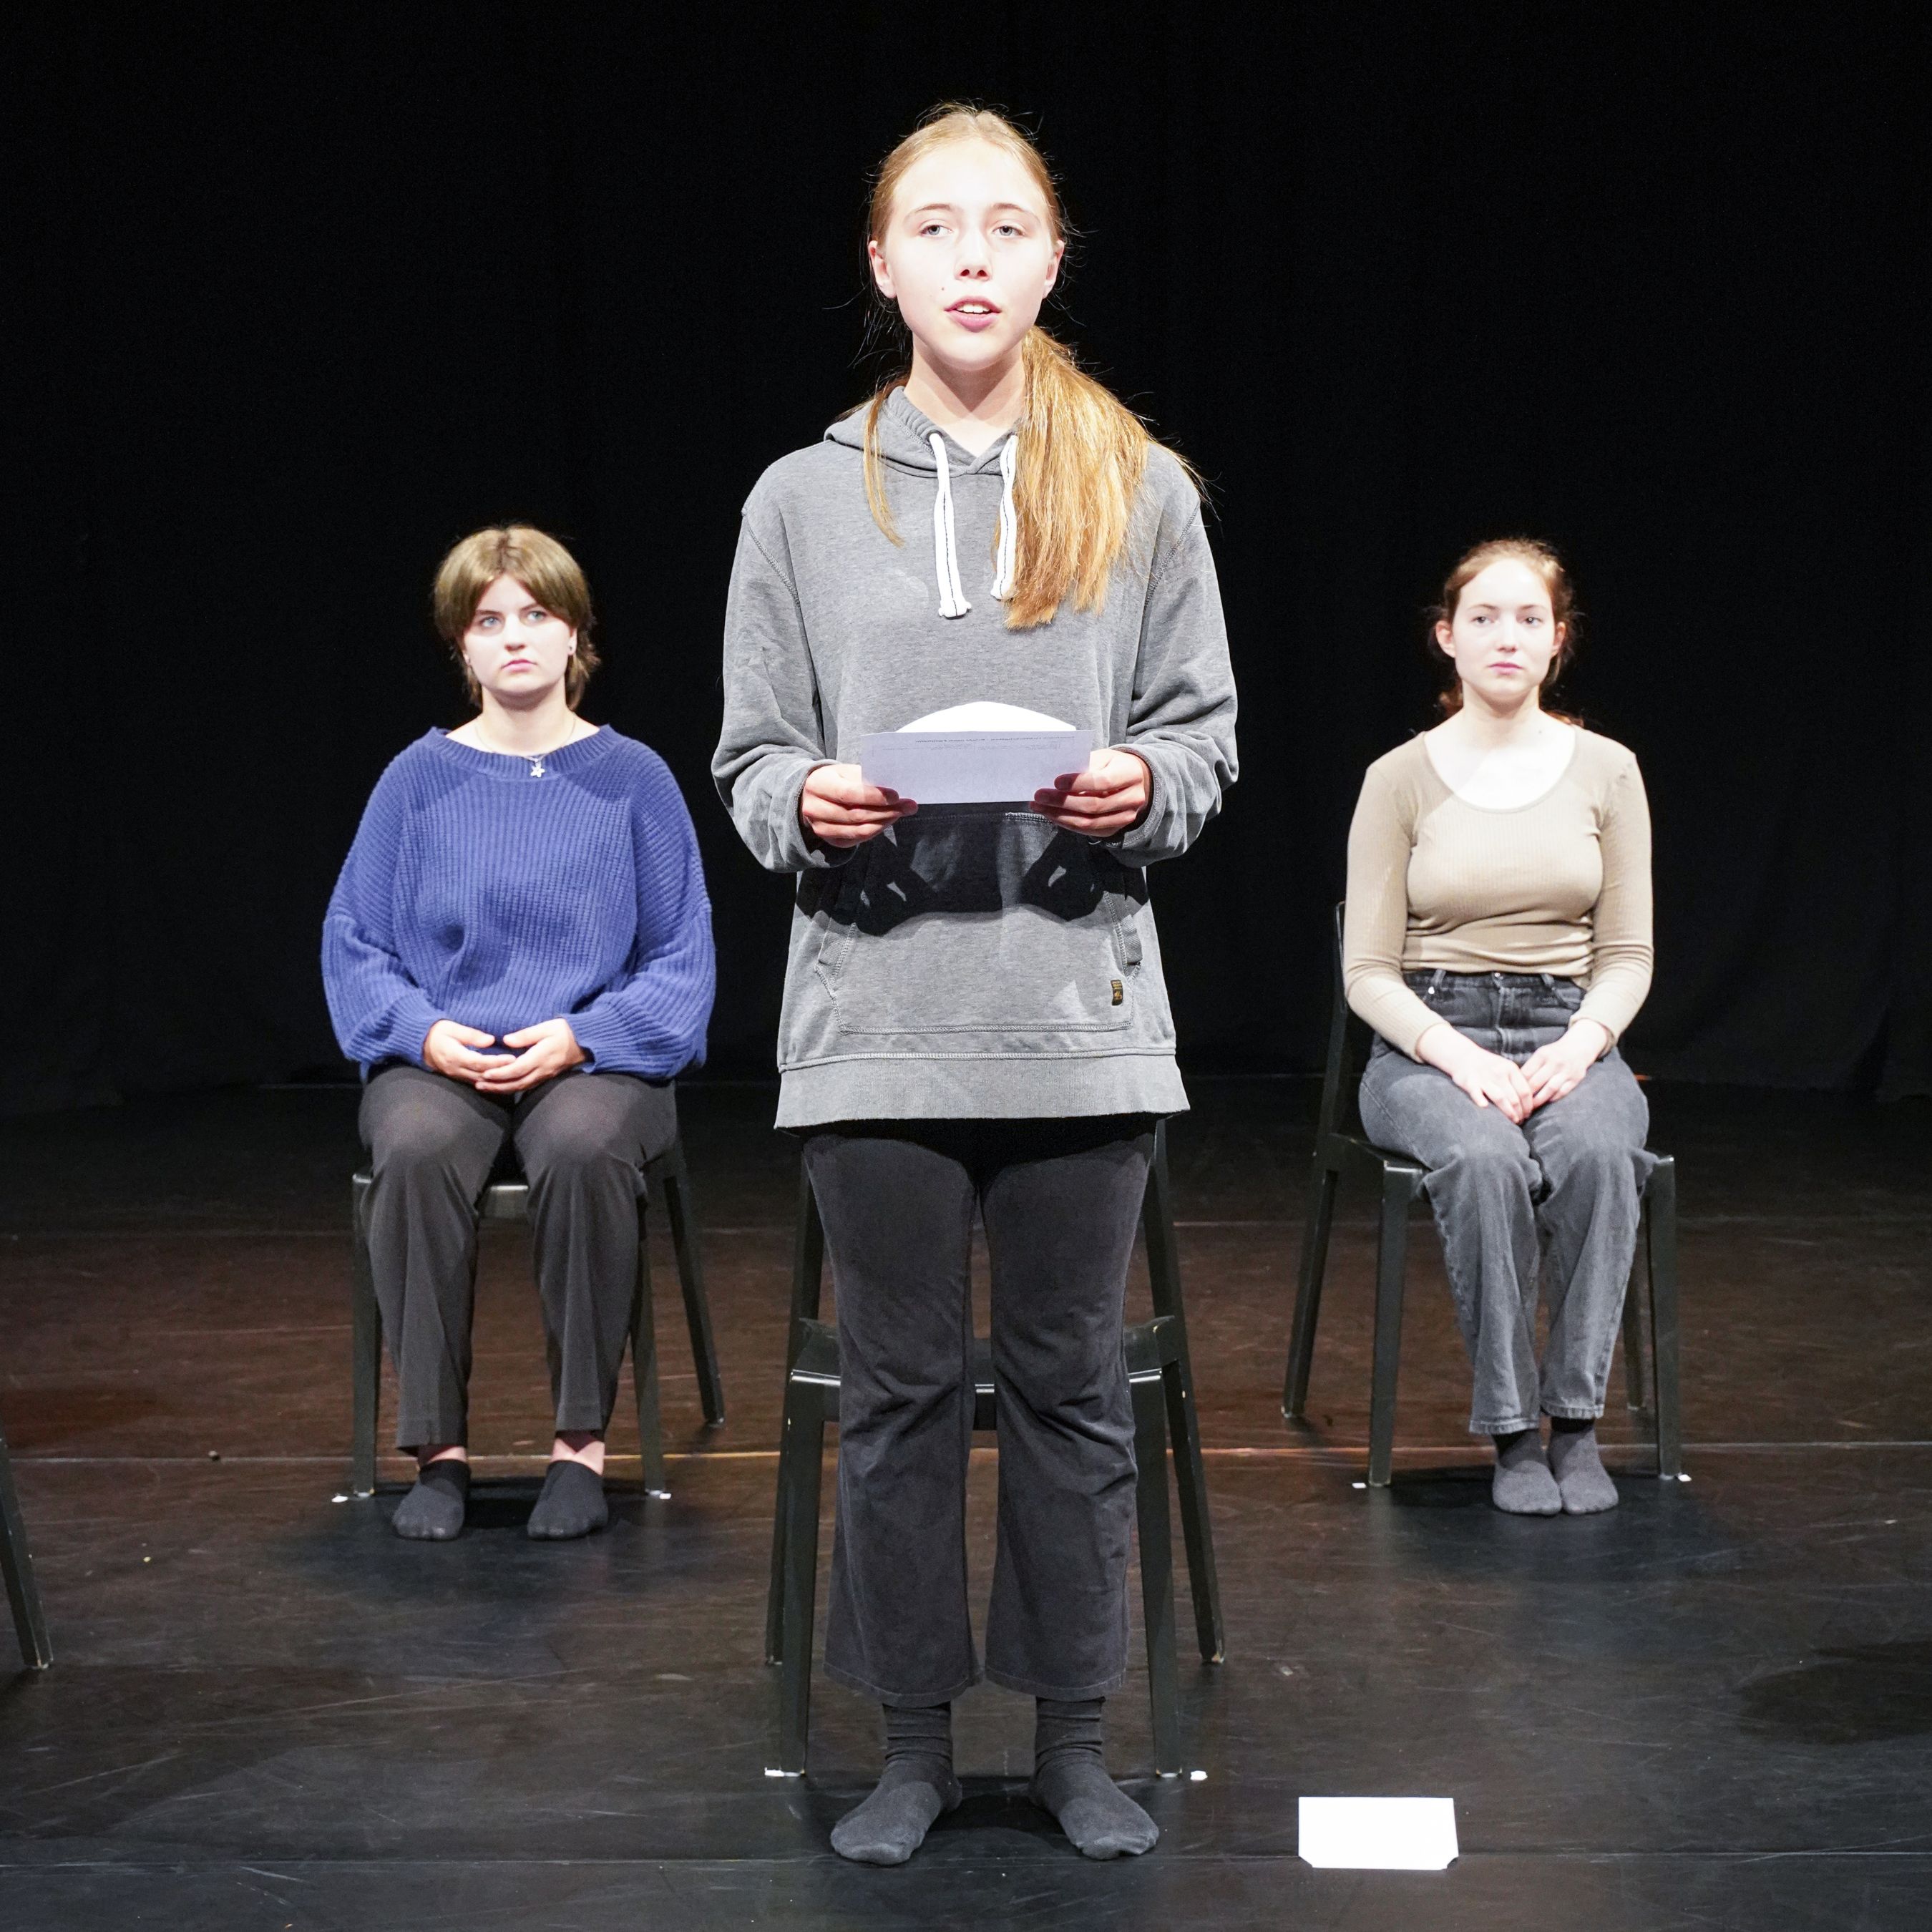 Eine junge Frau steht vorne auf der Bühne und liest einen Brief. Zwei Frauen sitzen hinter ihr und schauen zu ihr.